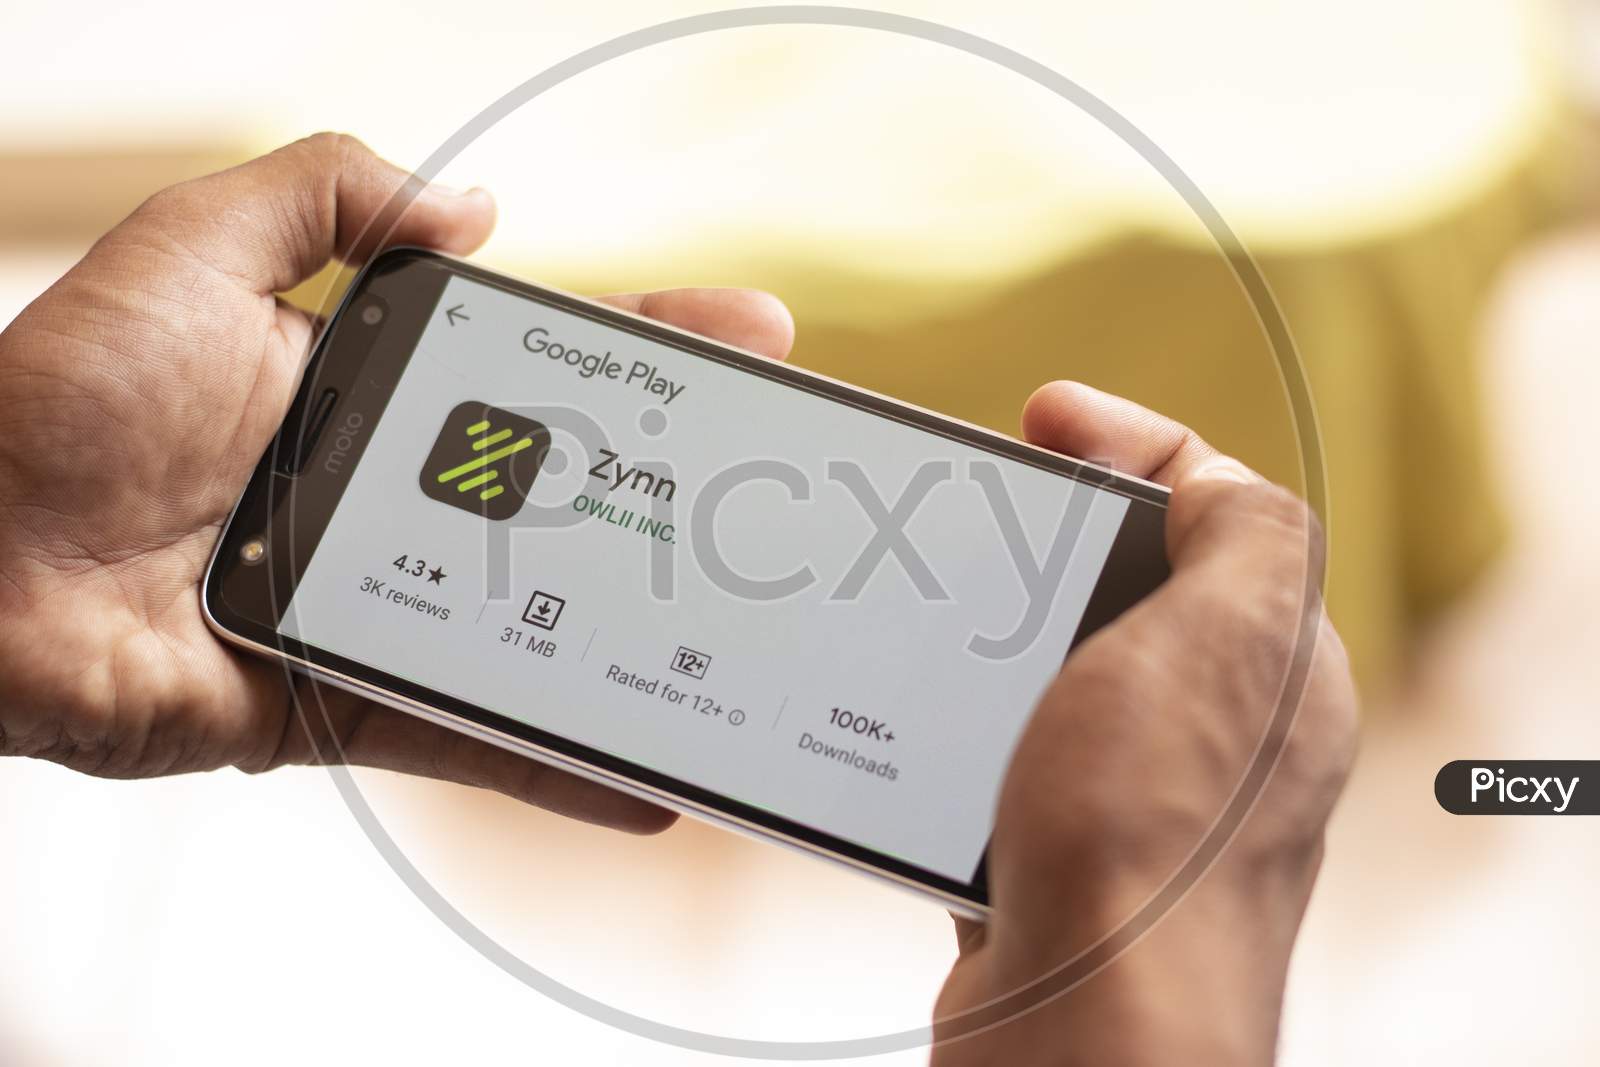 Zynn Social Media Networking App Downloading On Mobile